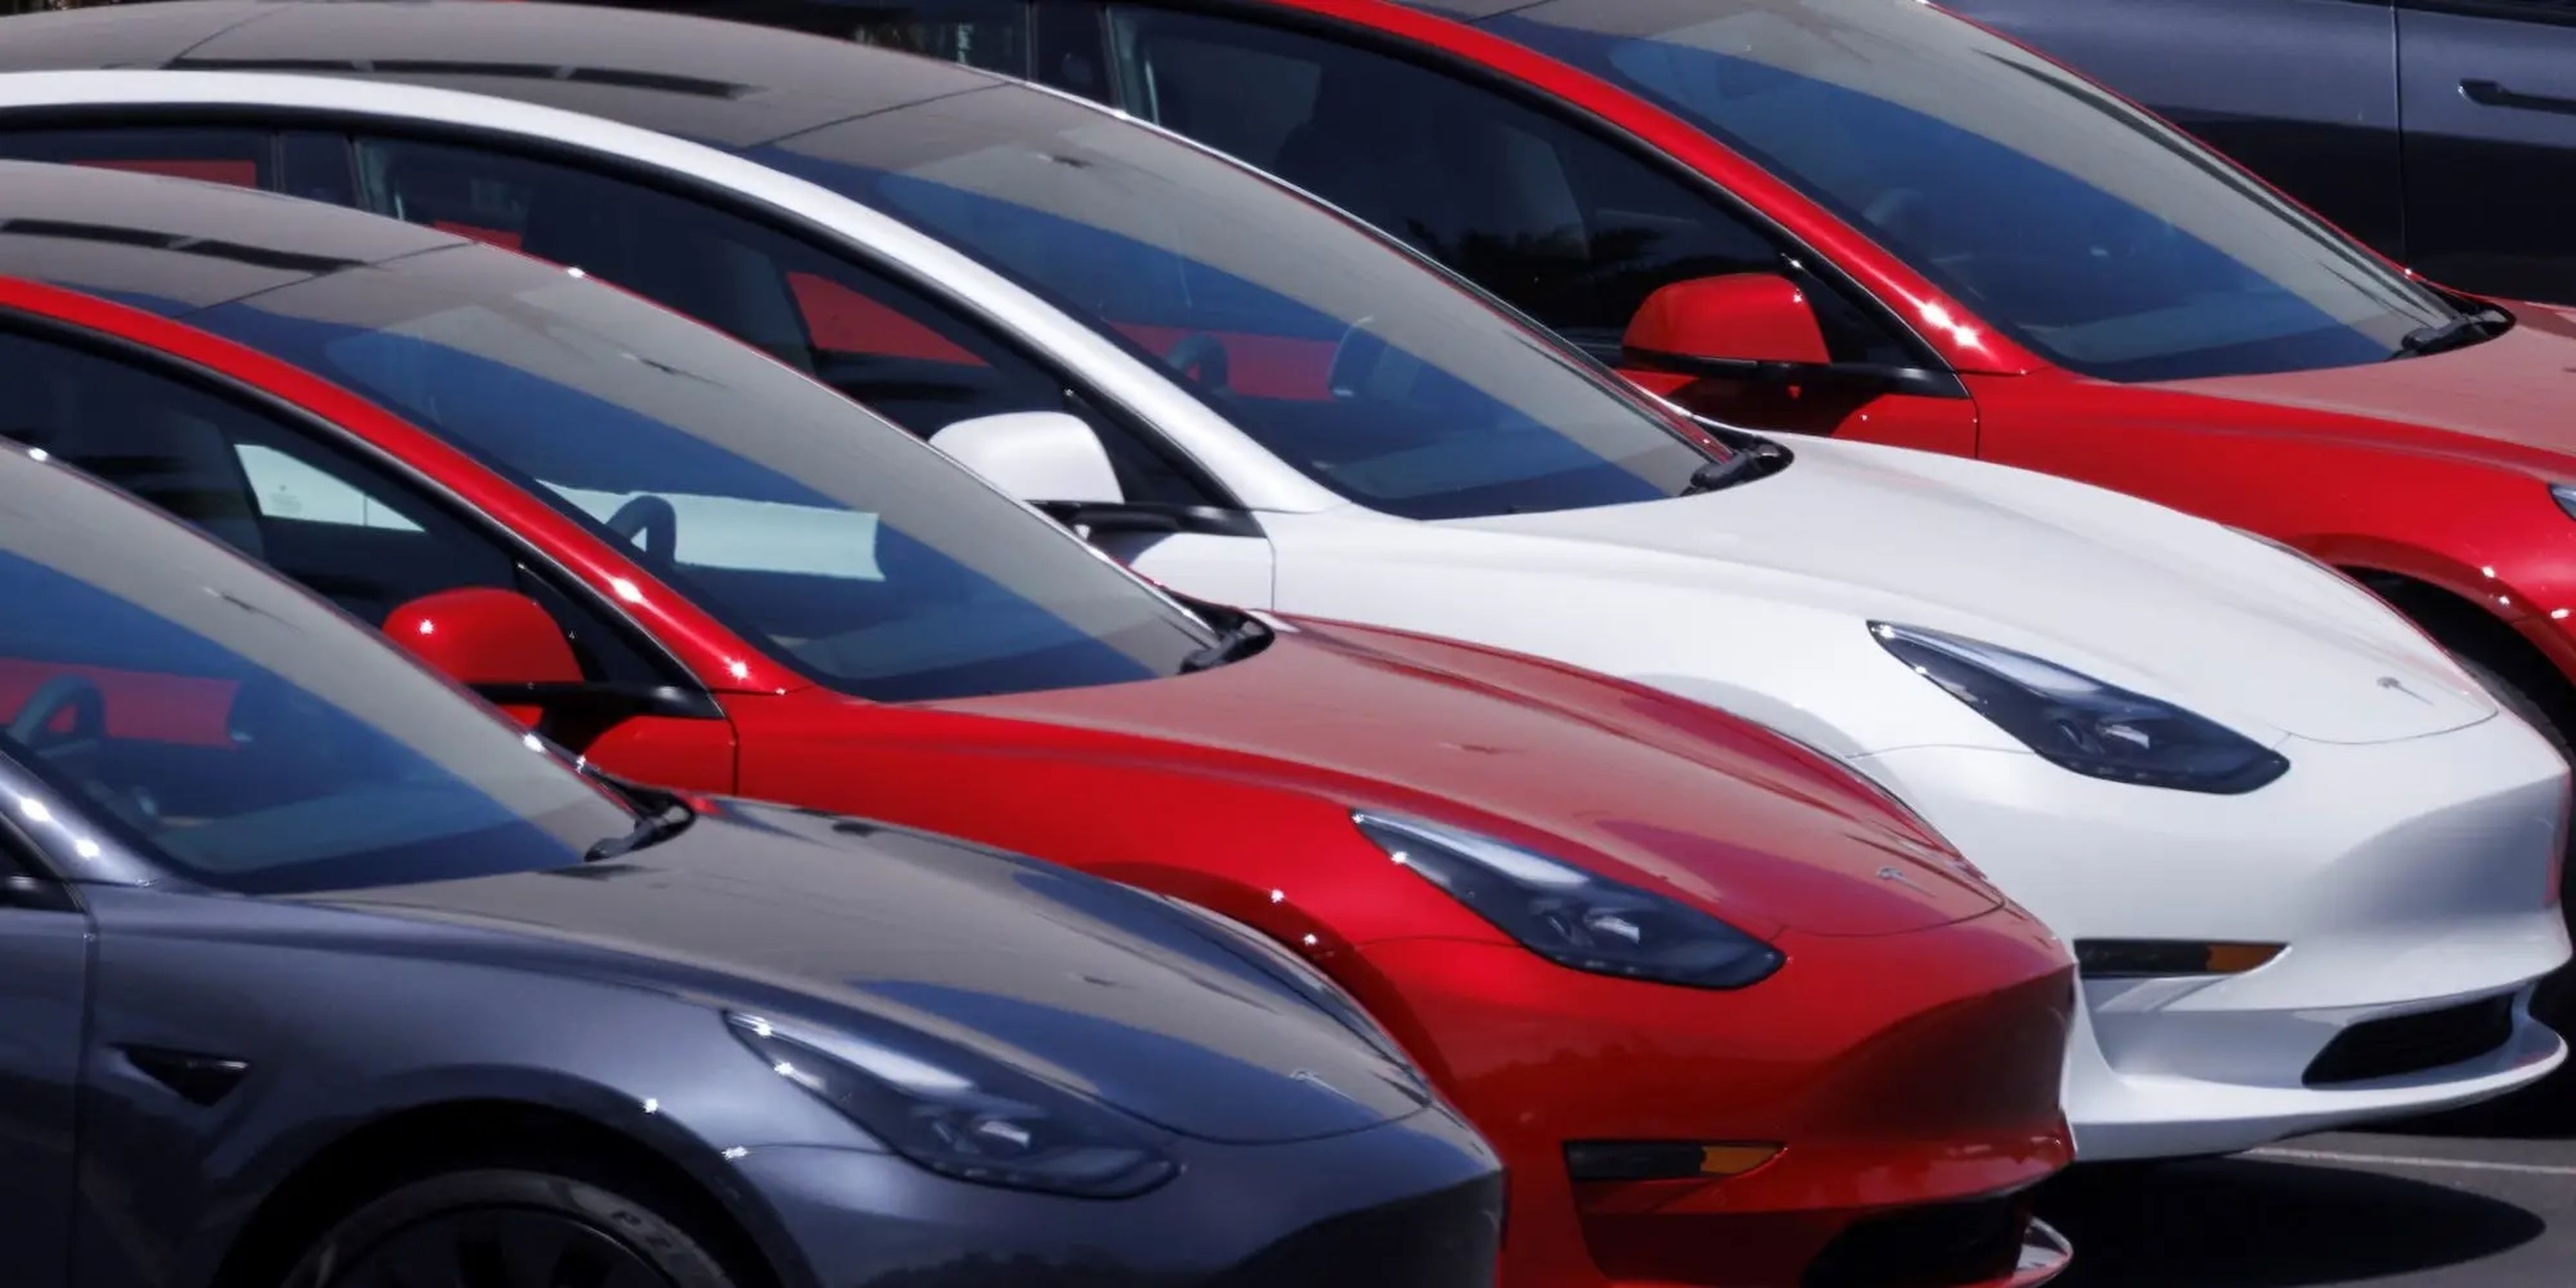 La gama de coches de Tesla se está quedando anticuada y la enorme ventaja tecnológica de la empresa se ha ido reduciendo.